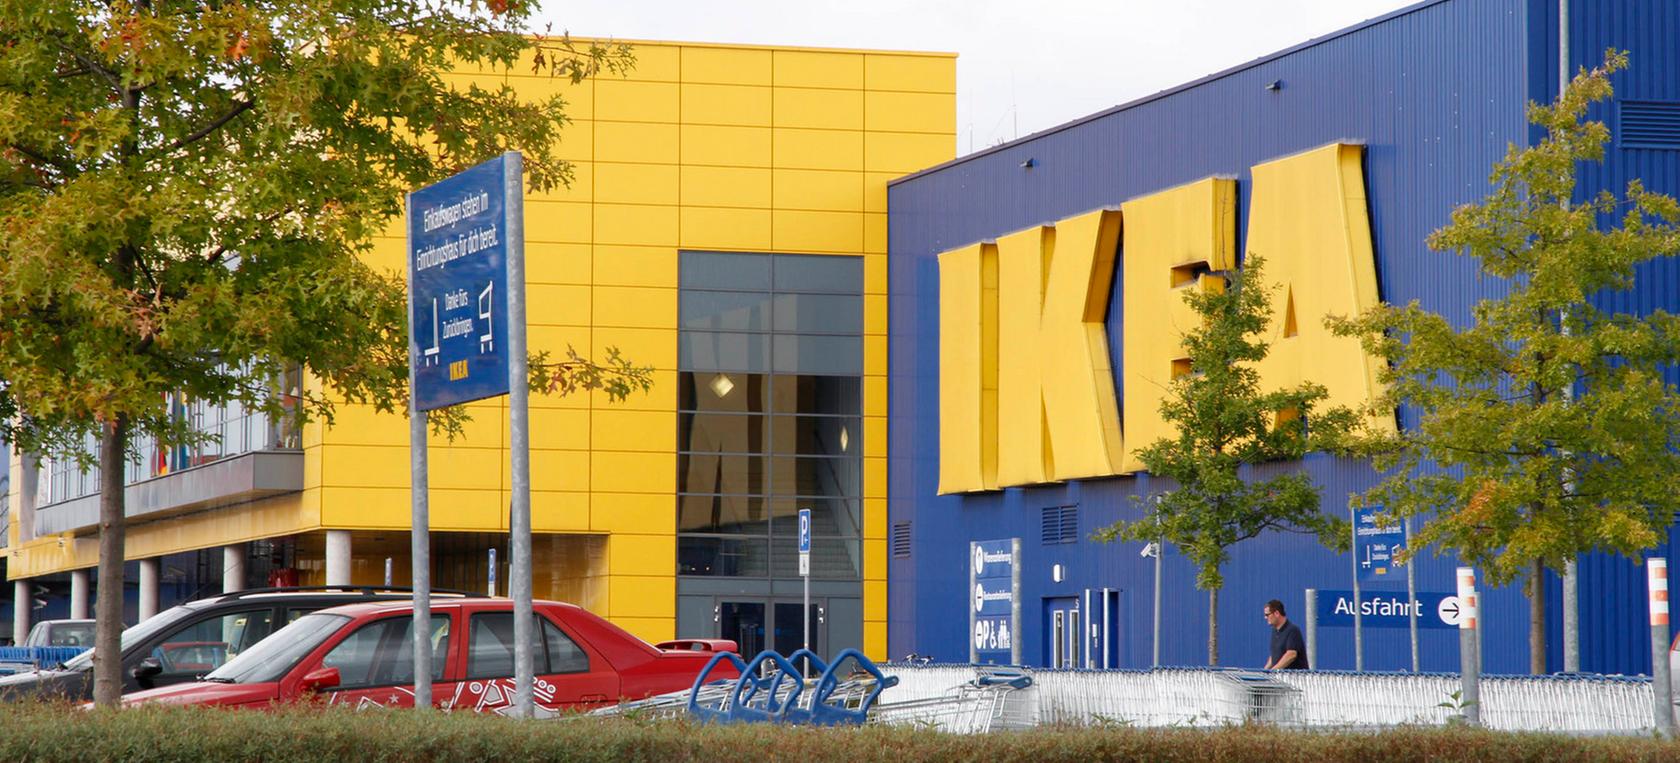 Ikea will in Nürnberg ein Lager- statt eines Möbelhauses errichten - die Kritik aus der Politik ist heftig.